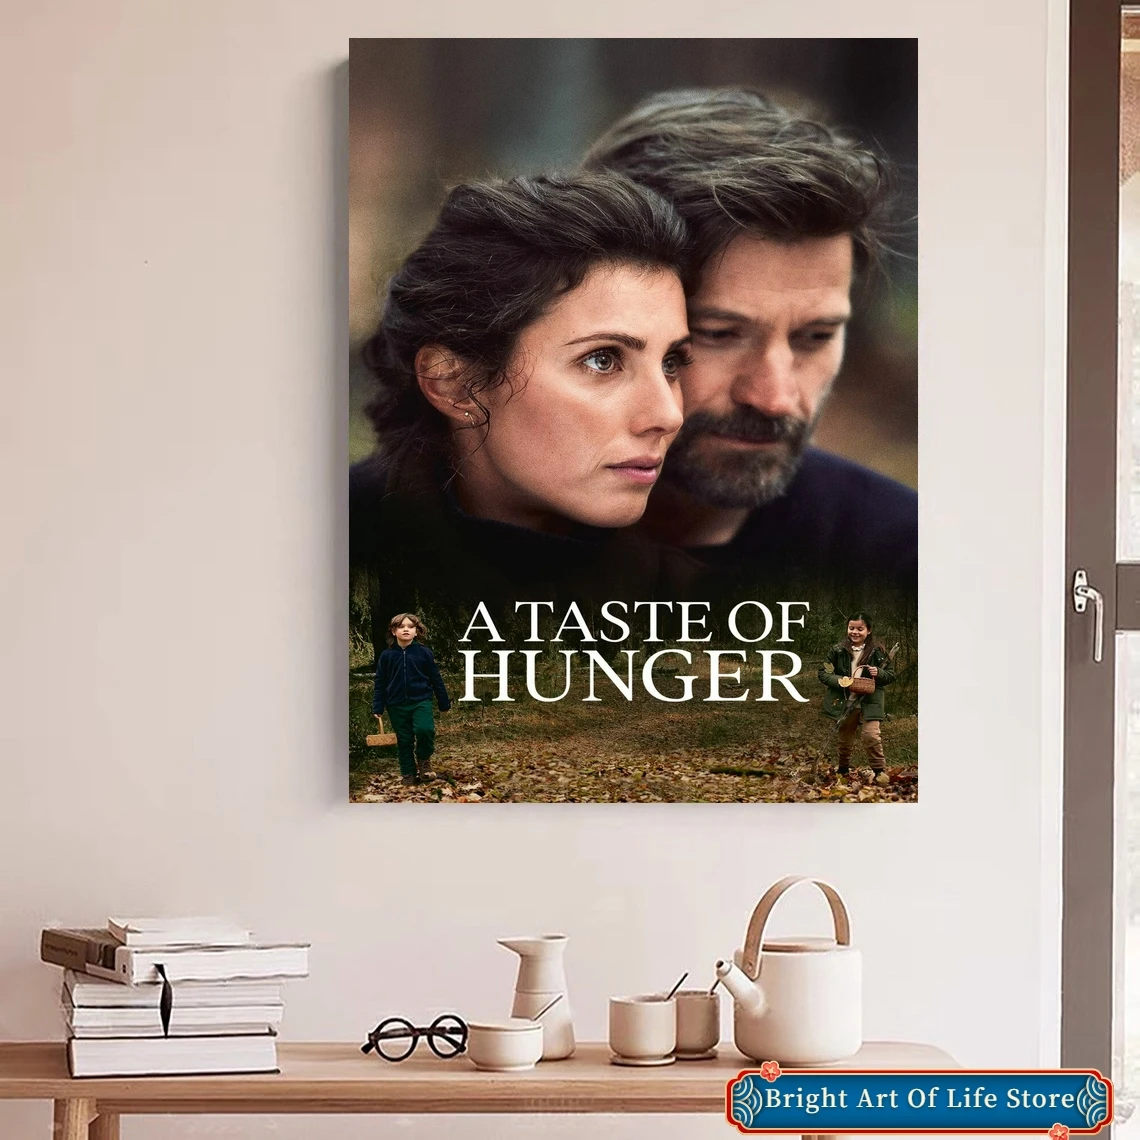 

Постер из фильма «вкус голода» (2021), художественная Обложка со звездой, фотопечать, домашний декор квартиры, настенная живопись (без рамки)